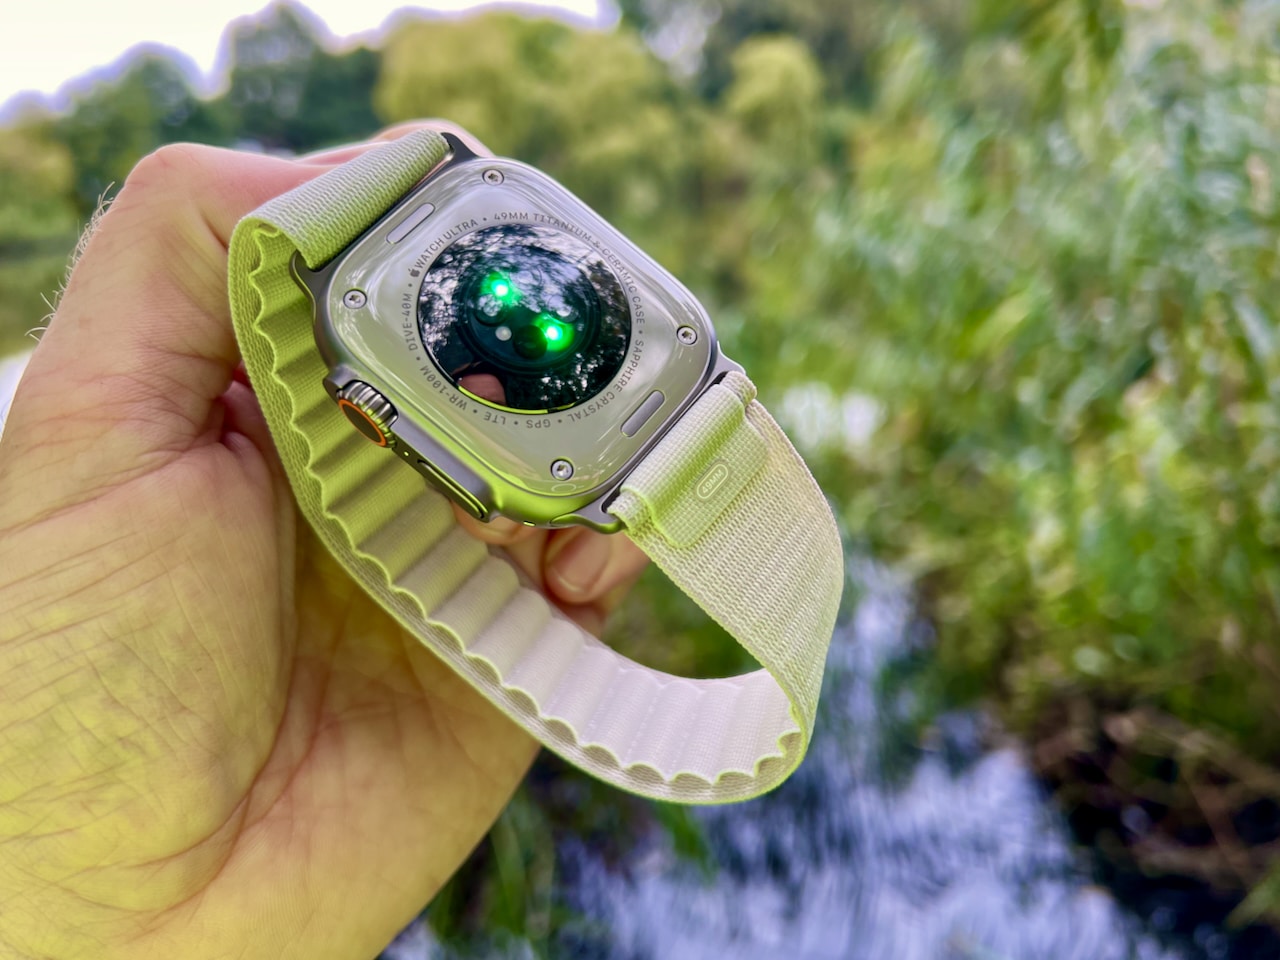 Die Apple Watch er den mest personlige enhed, der Apple nogensinde udviklet. Og den er designet til at ledsage dig hele dagen. Det smukke design, tilpassede urskiver og sundhedsovervågningsfunktioner gør det til en fantastisk gadget, smart modetilbehør og nyttigt værktøj på samme tid. Siden lanceringen i 2015 har Apple Watch udviklet sig til en af ​​de mest populære wearables på markedet. Med hver ny model tilføjet Apple funktionalitet og design forbedret og optimeret for at gøre det til et endnu mere nyttigt værktøj og modetilbehør. Det Apple Watch er mere end bare et smukt ur. Det er en state-of-the-art enhed med mange funktioner, der vil gøre dit liv nemmere og sundere. Fra at overvåge dine fitness- og sundhedsdata til at hjælpe dig med at navigere og modtage meddelelser Apple Watch er en ægte allrounder.